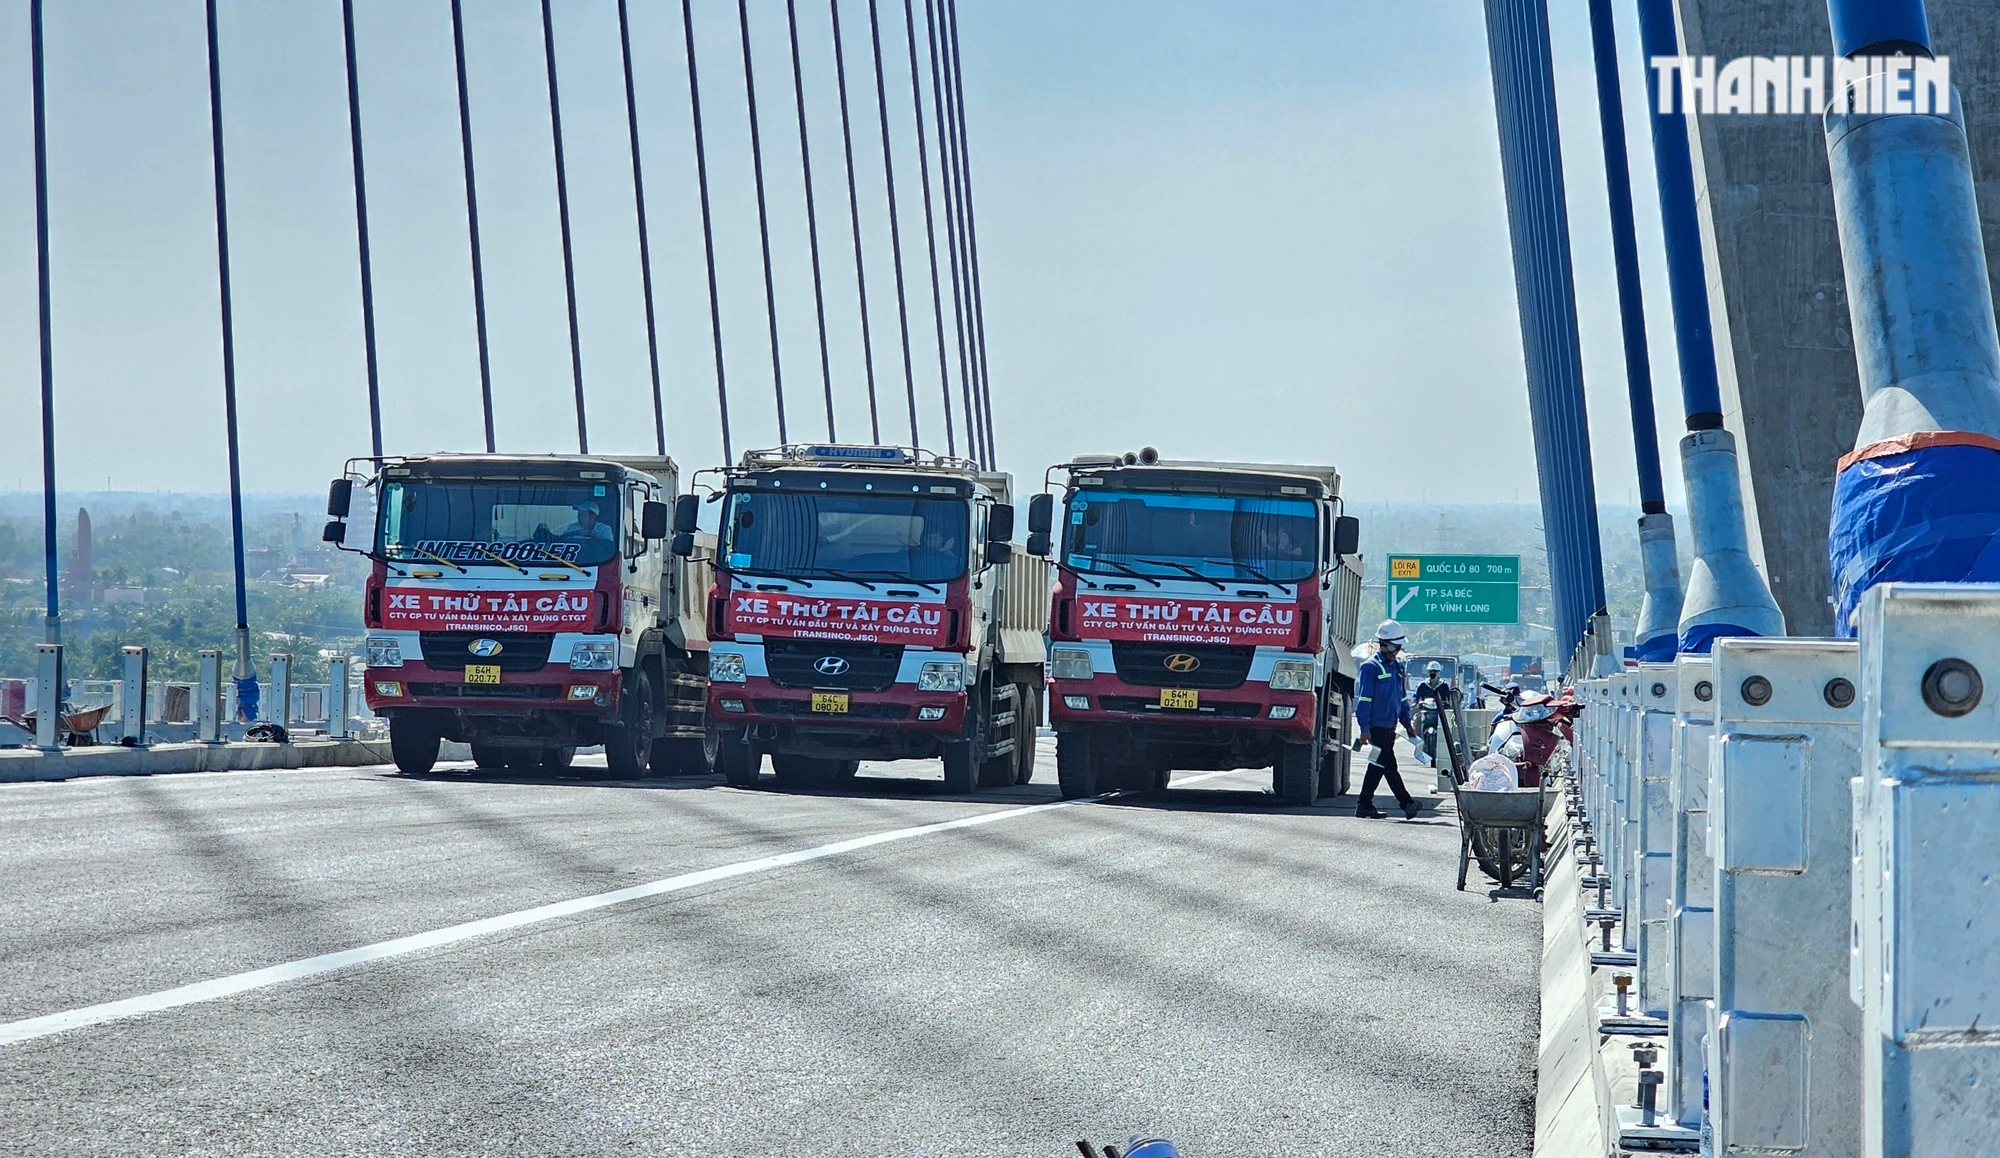 Cầu Mỹ Thuận 2 và cao tốc Mỹ Thuận - Cần Thơ khánh thành vào ngày 24.12 - Ảnh 3.